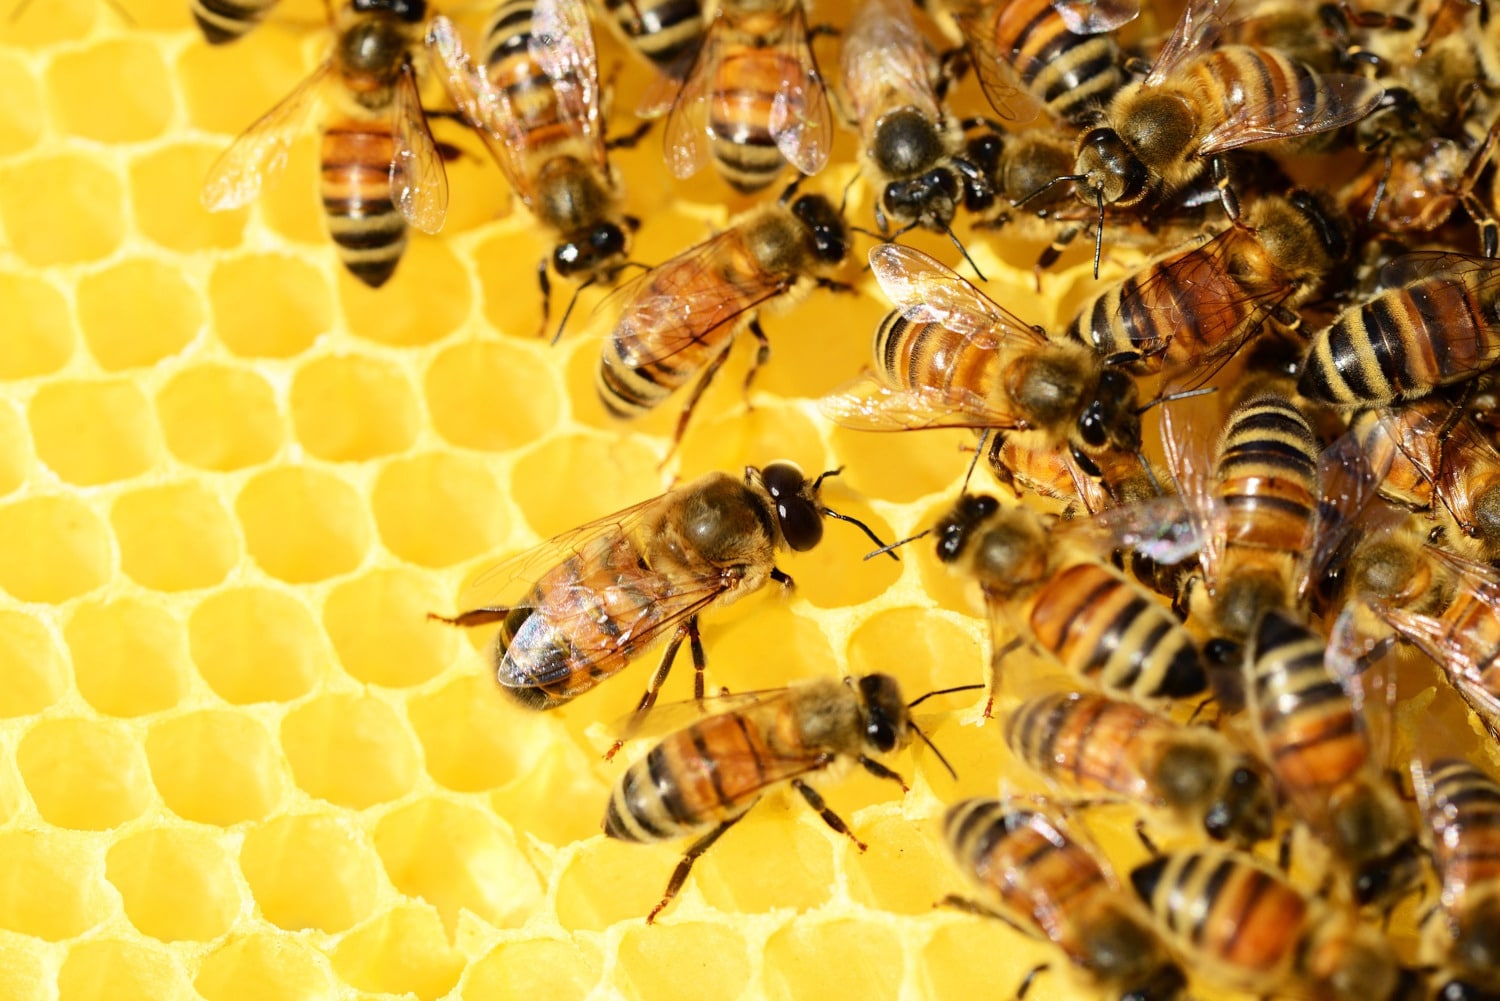 Duree De Vie D Une Abeille Les abeilles vivent deux fois moins longtemps qu'il y a 50 ans